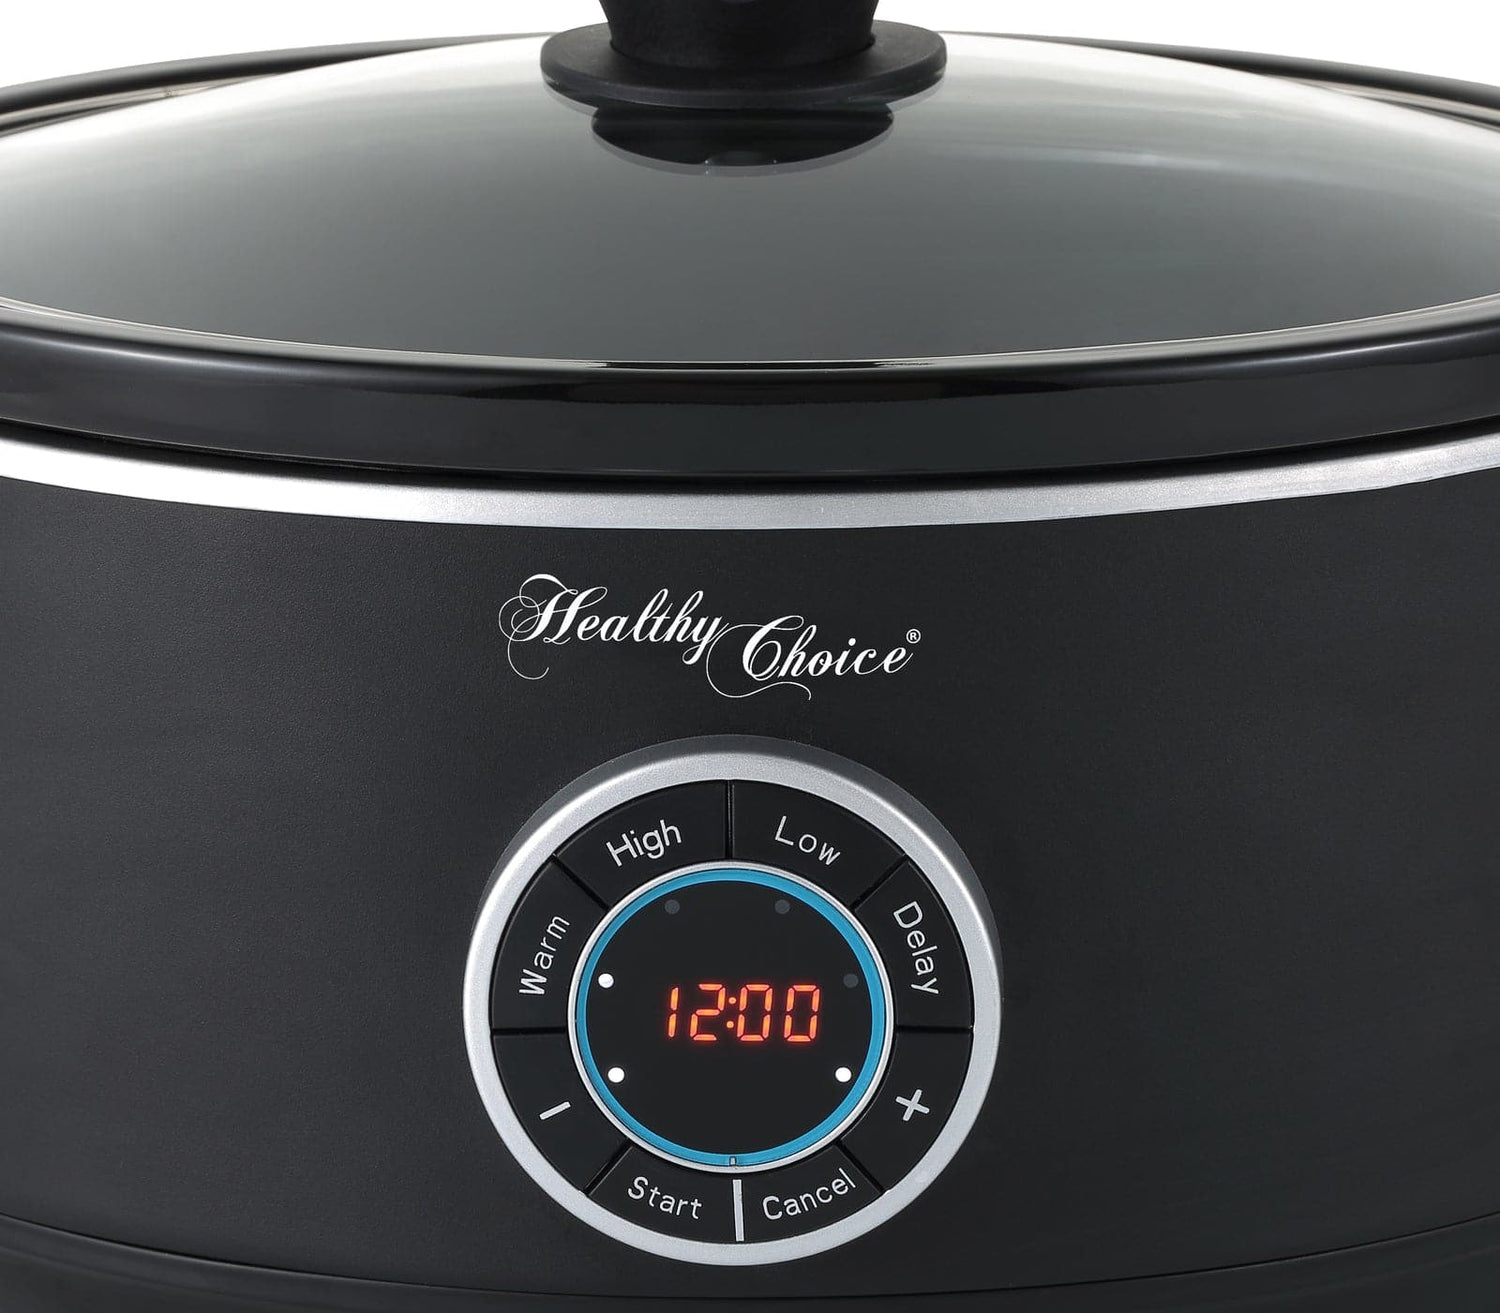 6.5L Digital Slow Cooker w/ Ceramic Pot, 300W, LED, 3 Programs-Appliances &gt; Kitchen Appliances-PEROZ Accessories